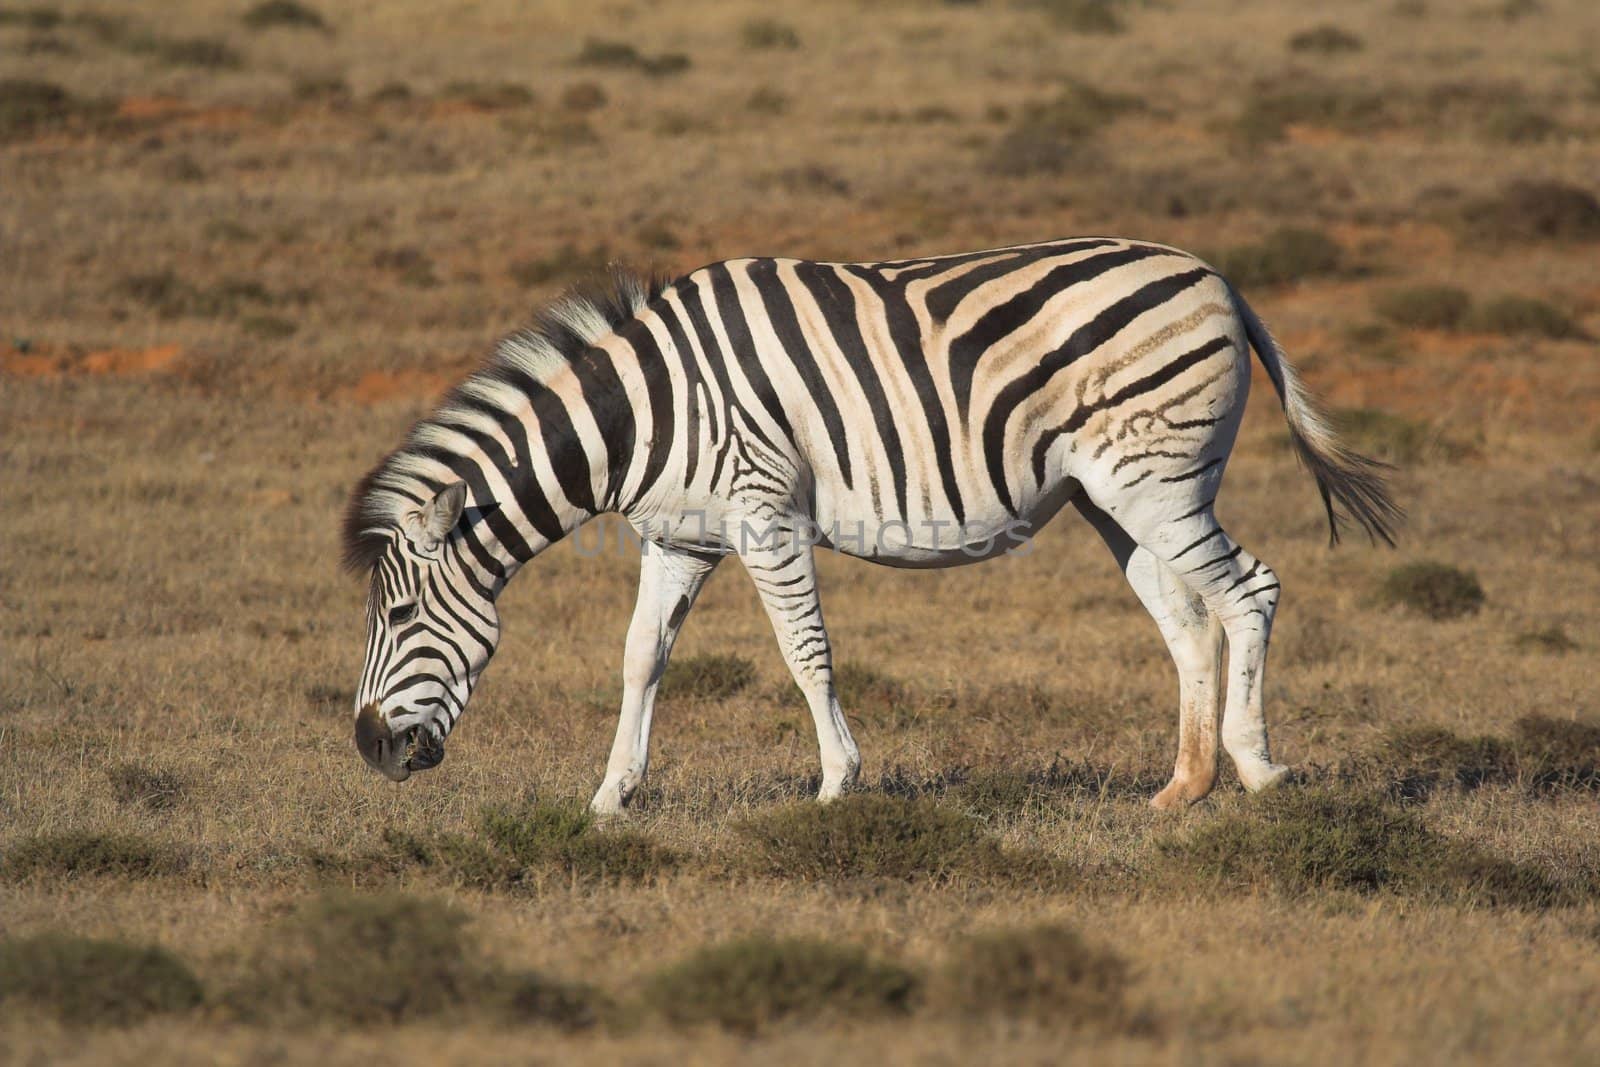 Zebra Feeding by nightowlza